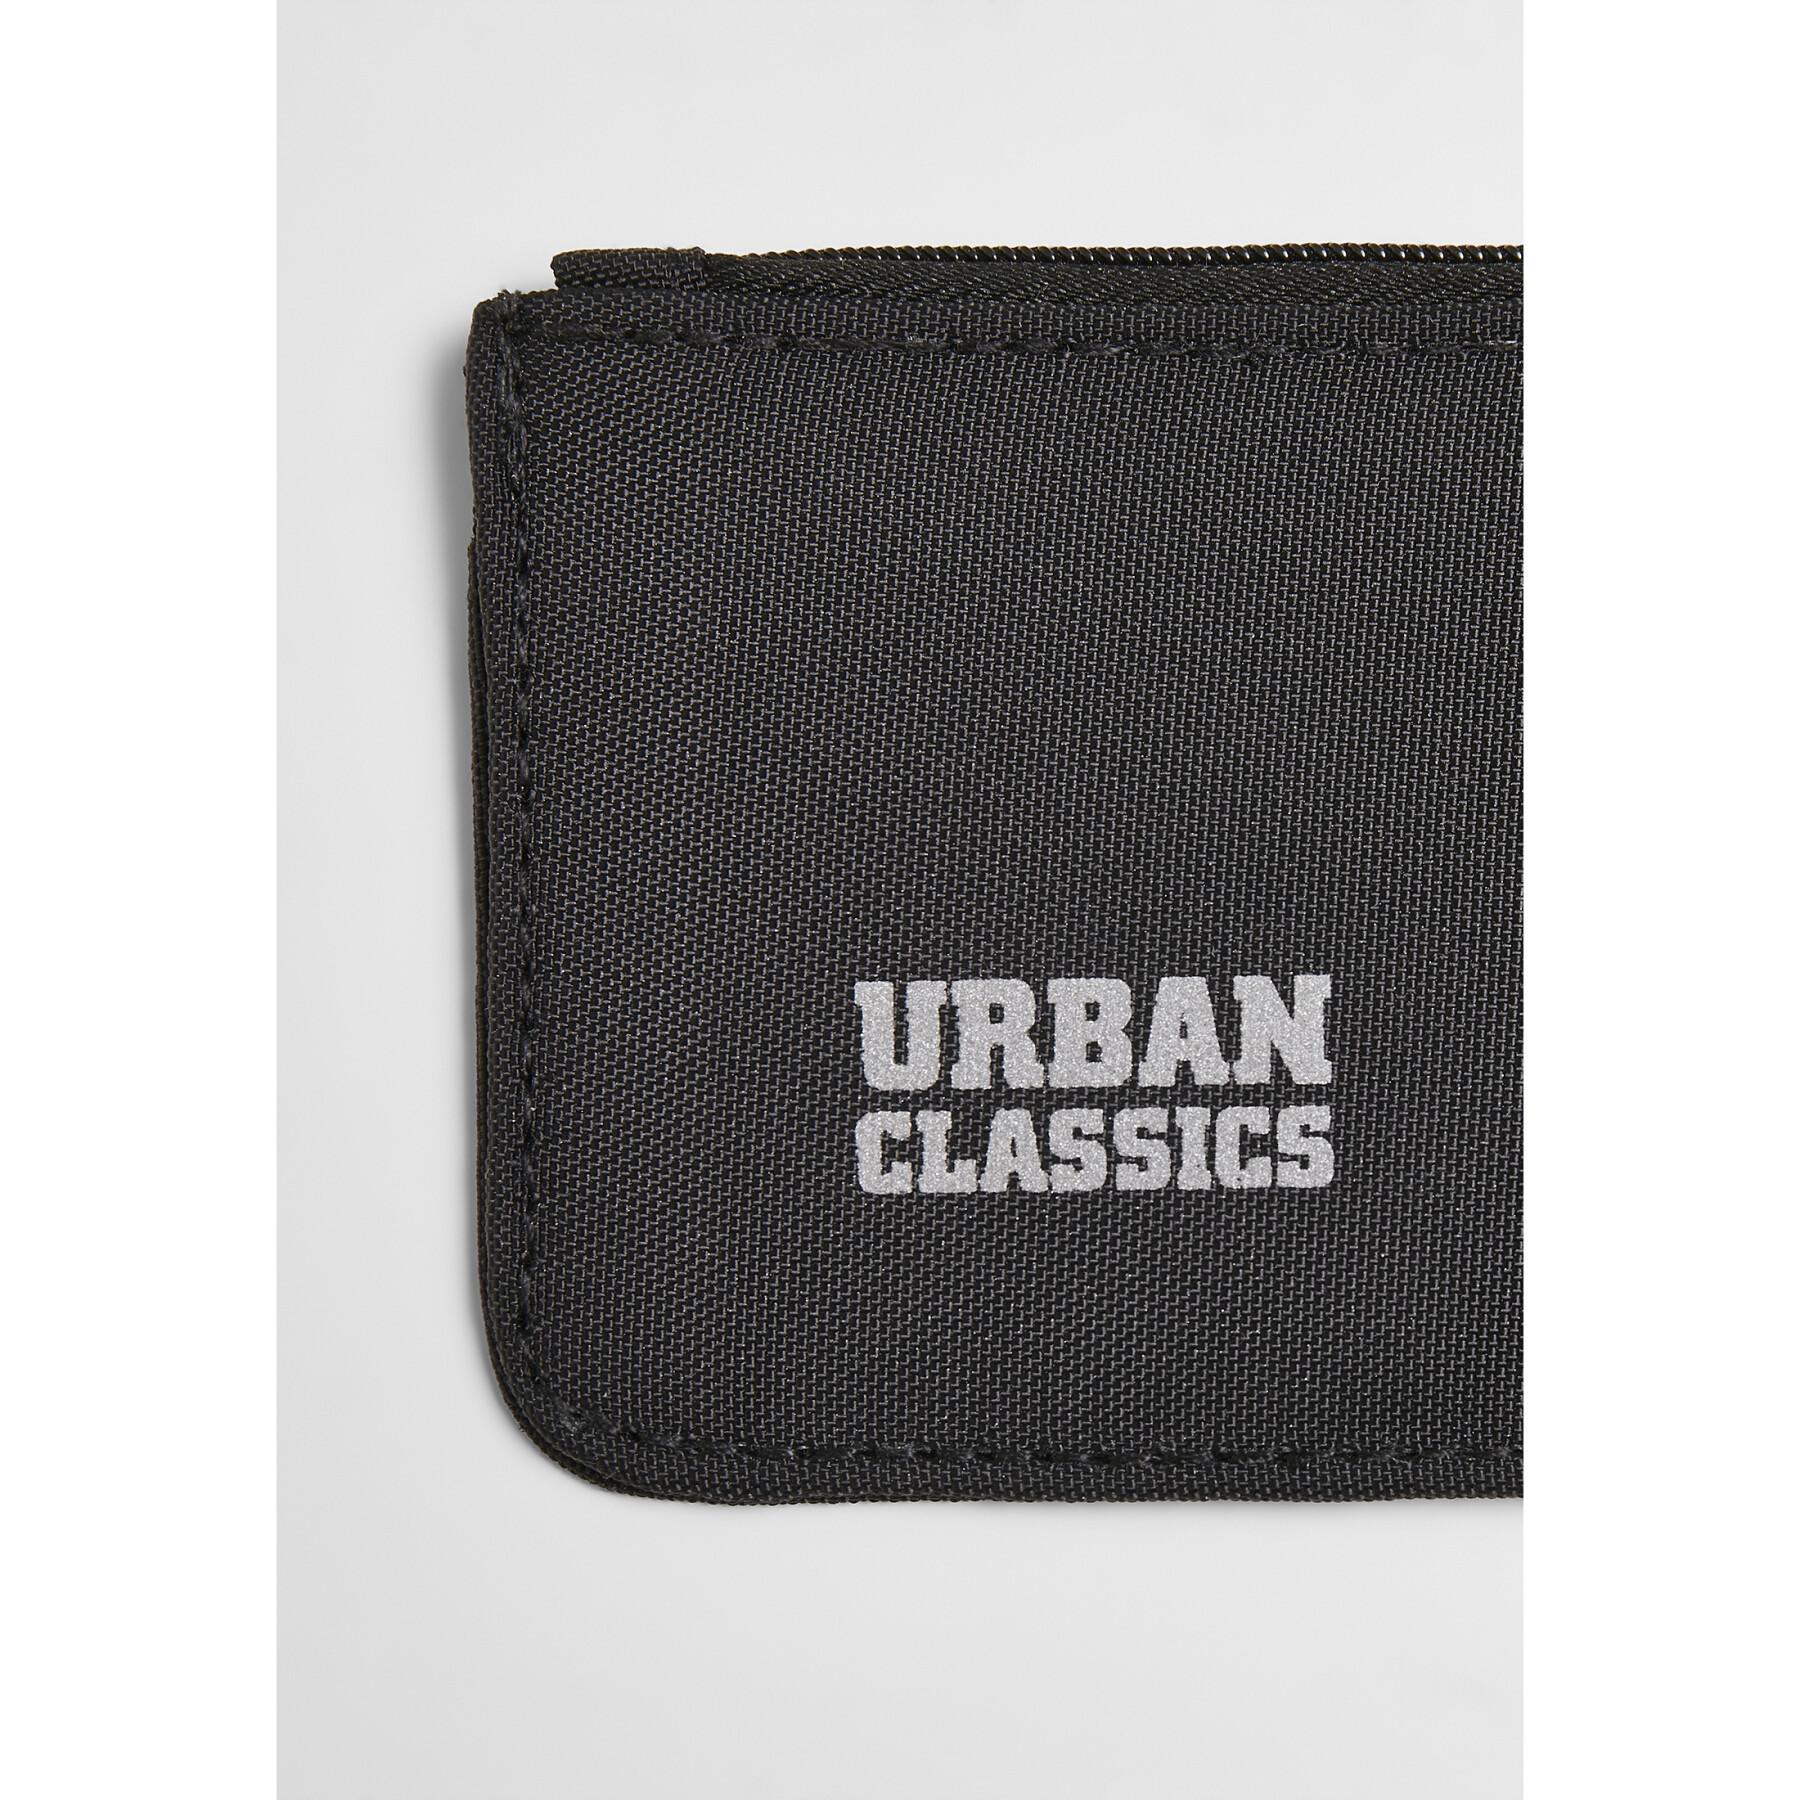 Wielofunkcyjny portfel z poliestru pochodzącego z recyklingu Urban Classics